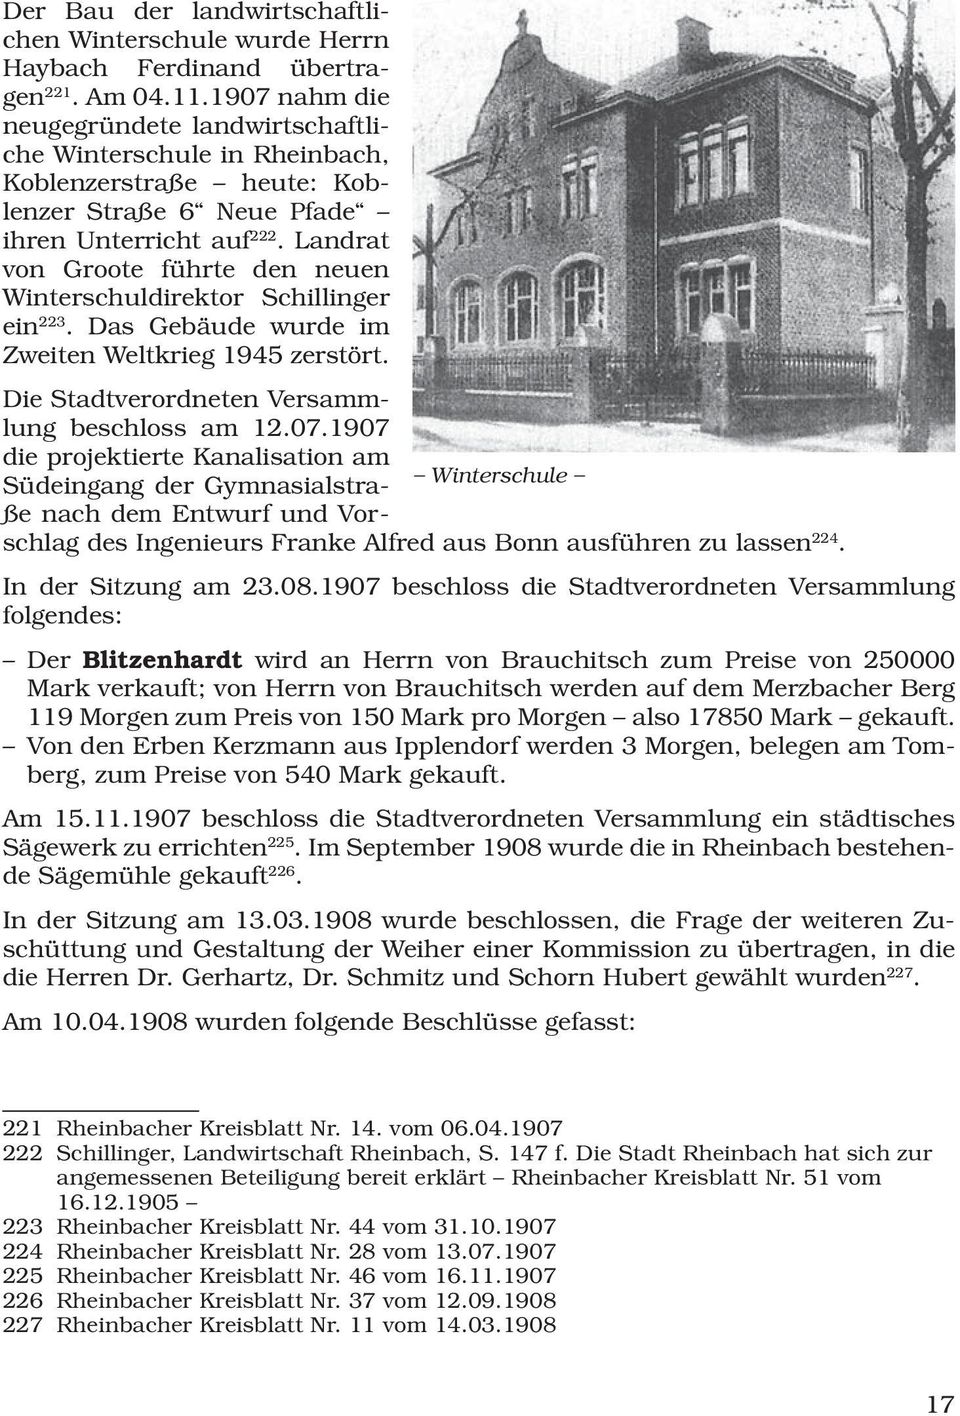 Landrat von Groote führte den neuen Winterschuldirektor Schillinger ein 223. Das Gebäude wurde im Zweiten Weltkrieg 1945 zerstört. Die Stadtverordneten Versammlung beschloss am 12.07.